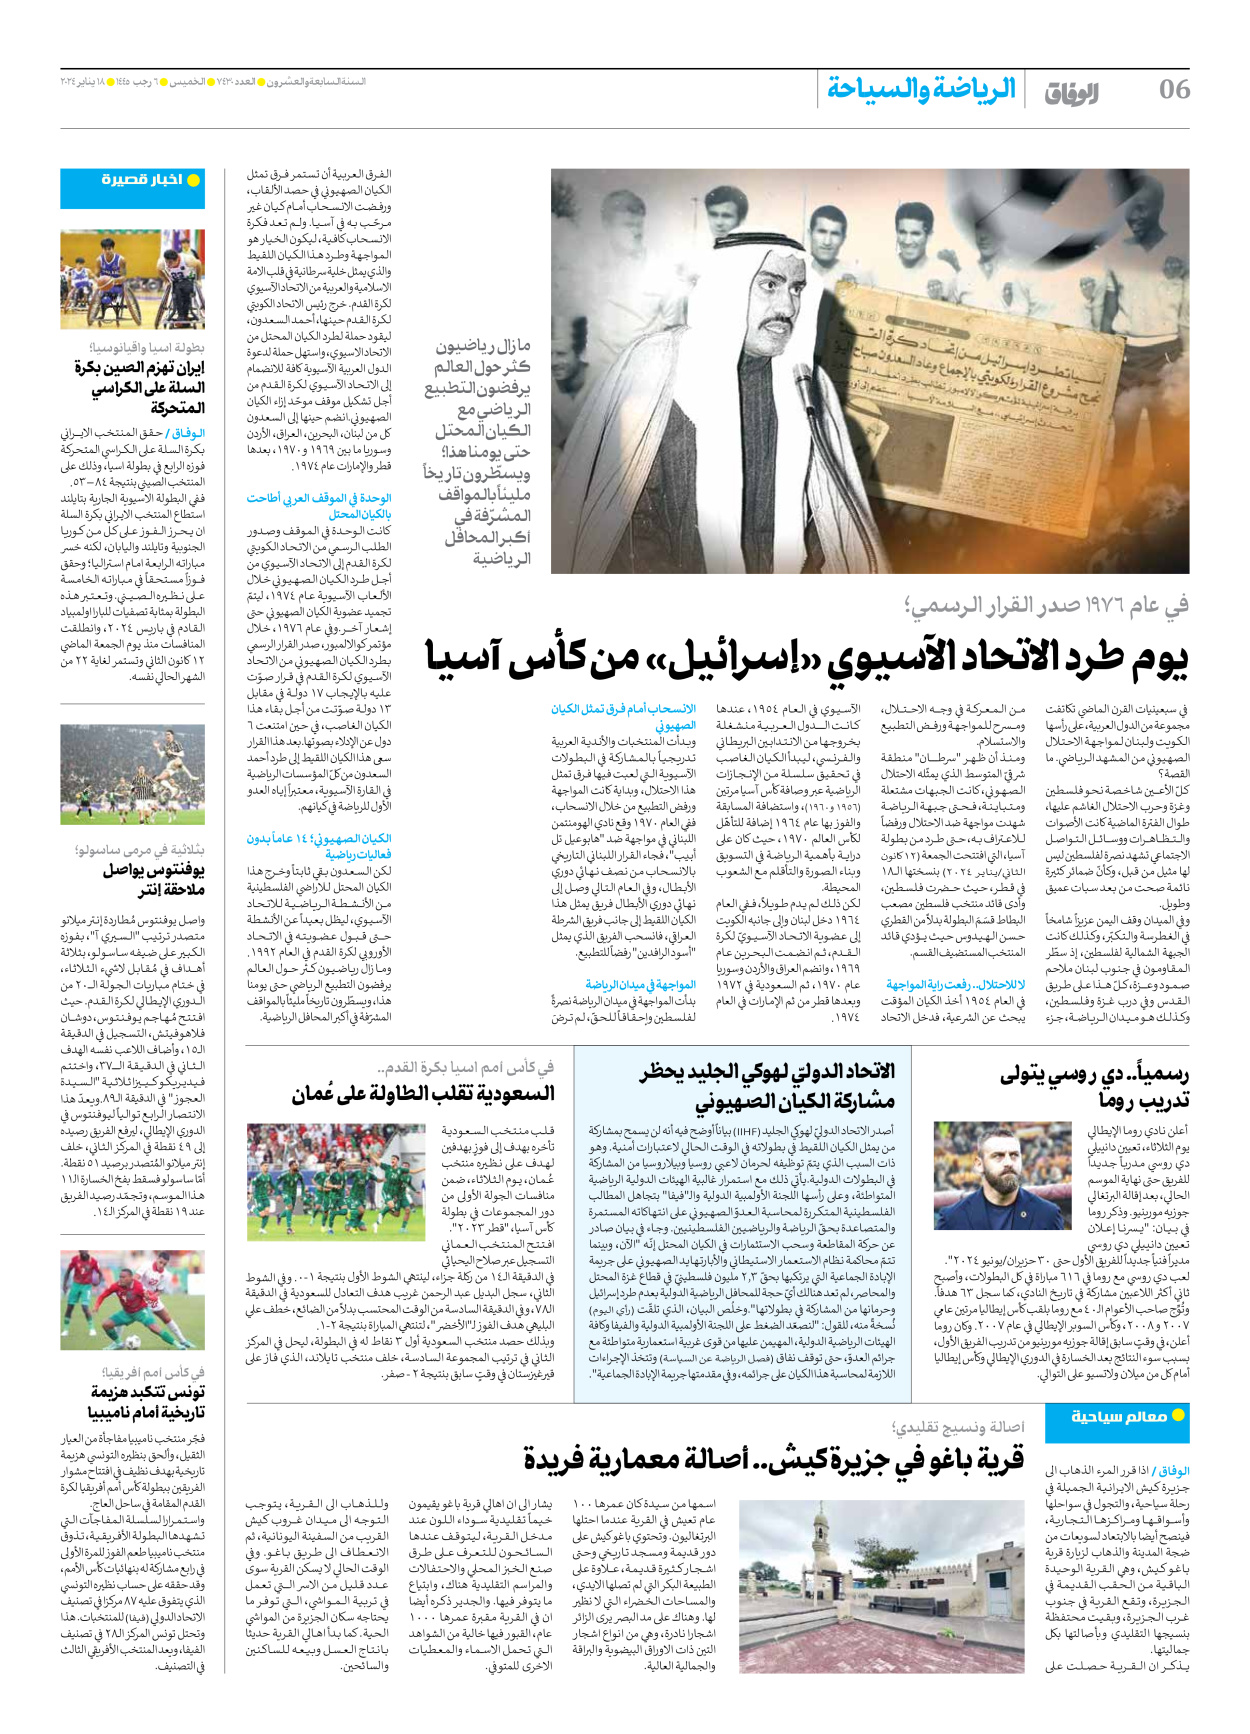 صحیفة ایران الدولیة الوفاق - العدد سبعة آلاف وأربعمائة وثلاثون - ١٨ يناير ٢٠٢٤ - الصفحة ٦